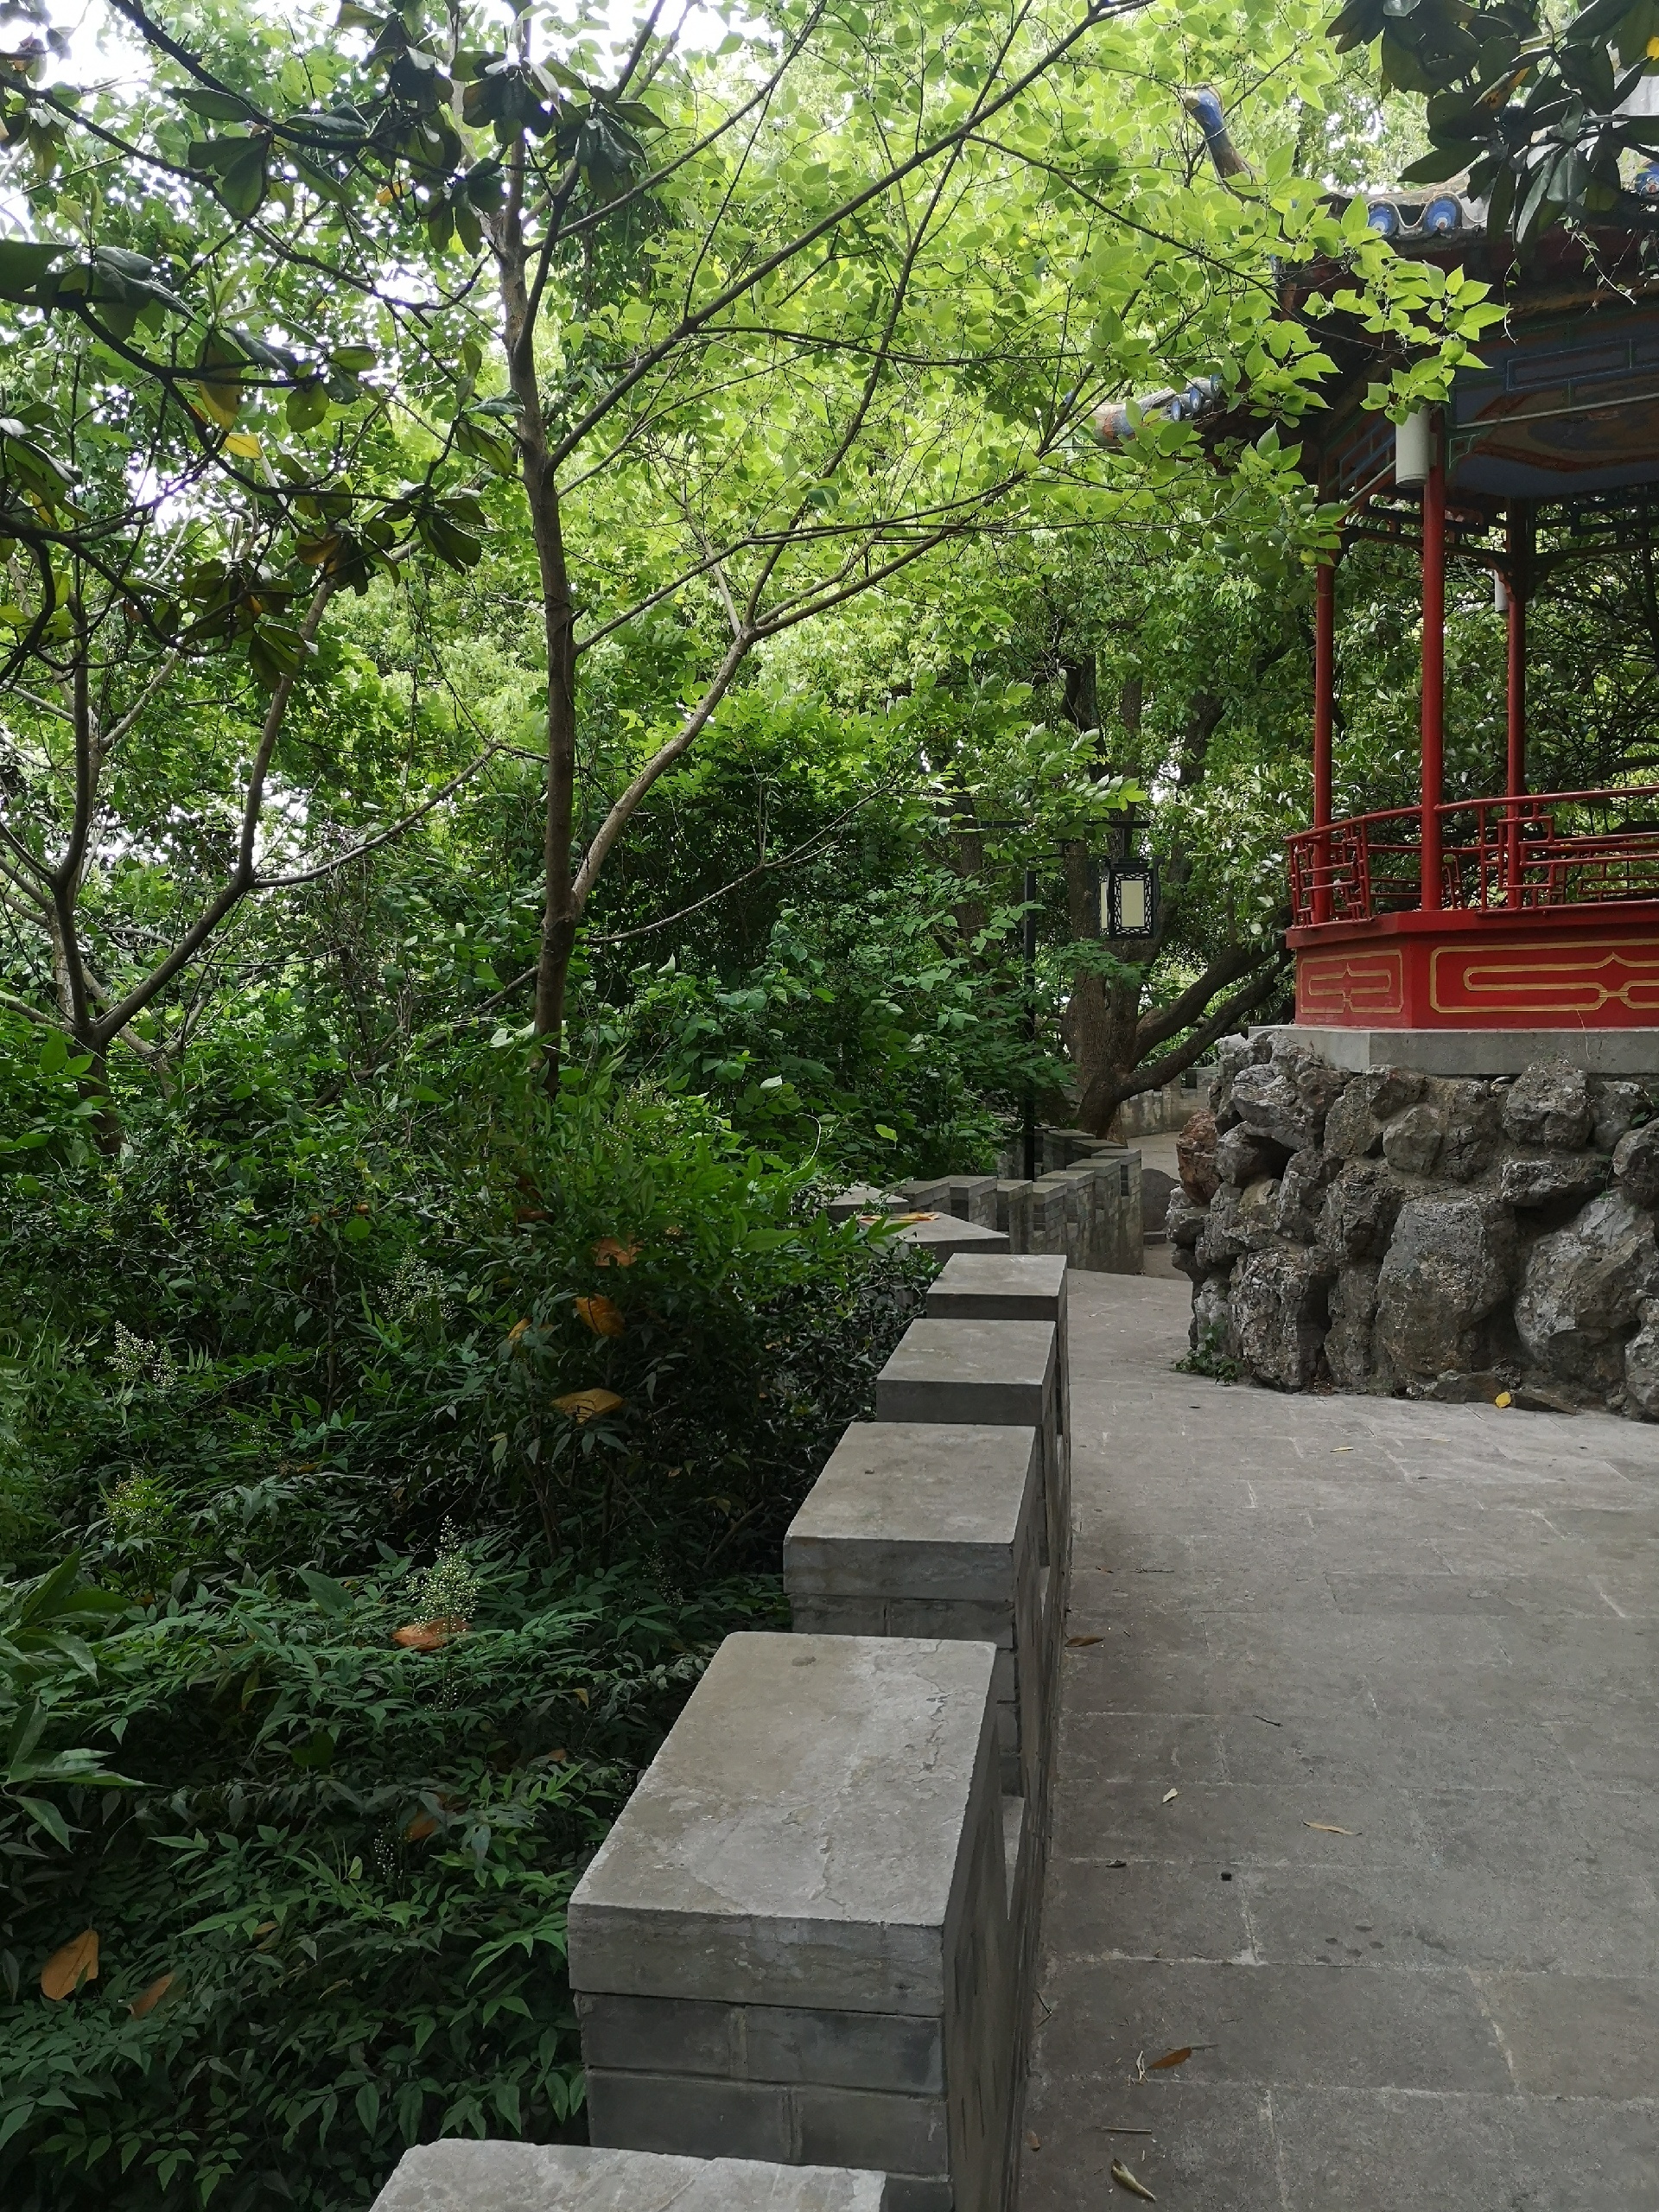 南京东山公园 真正是在山上打造的公园   台阶众多   门面气派